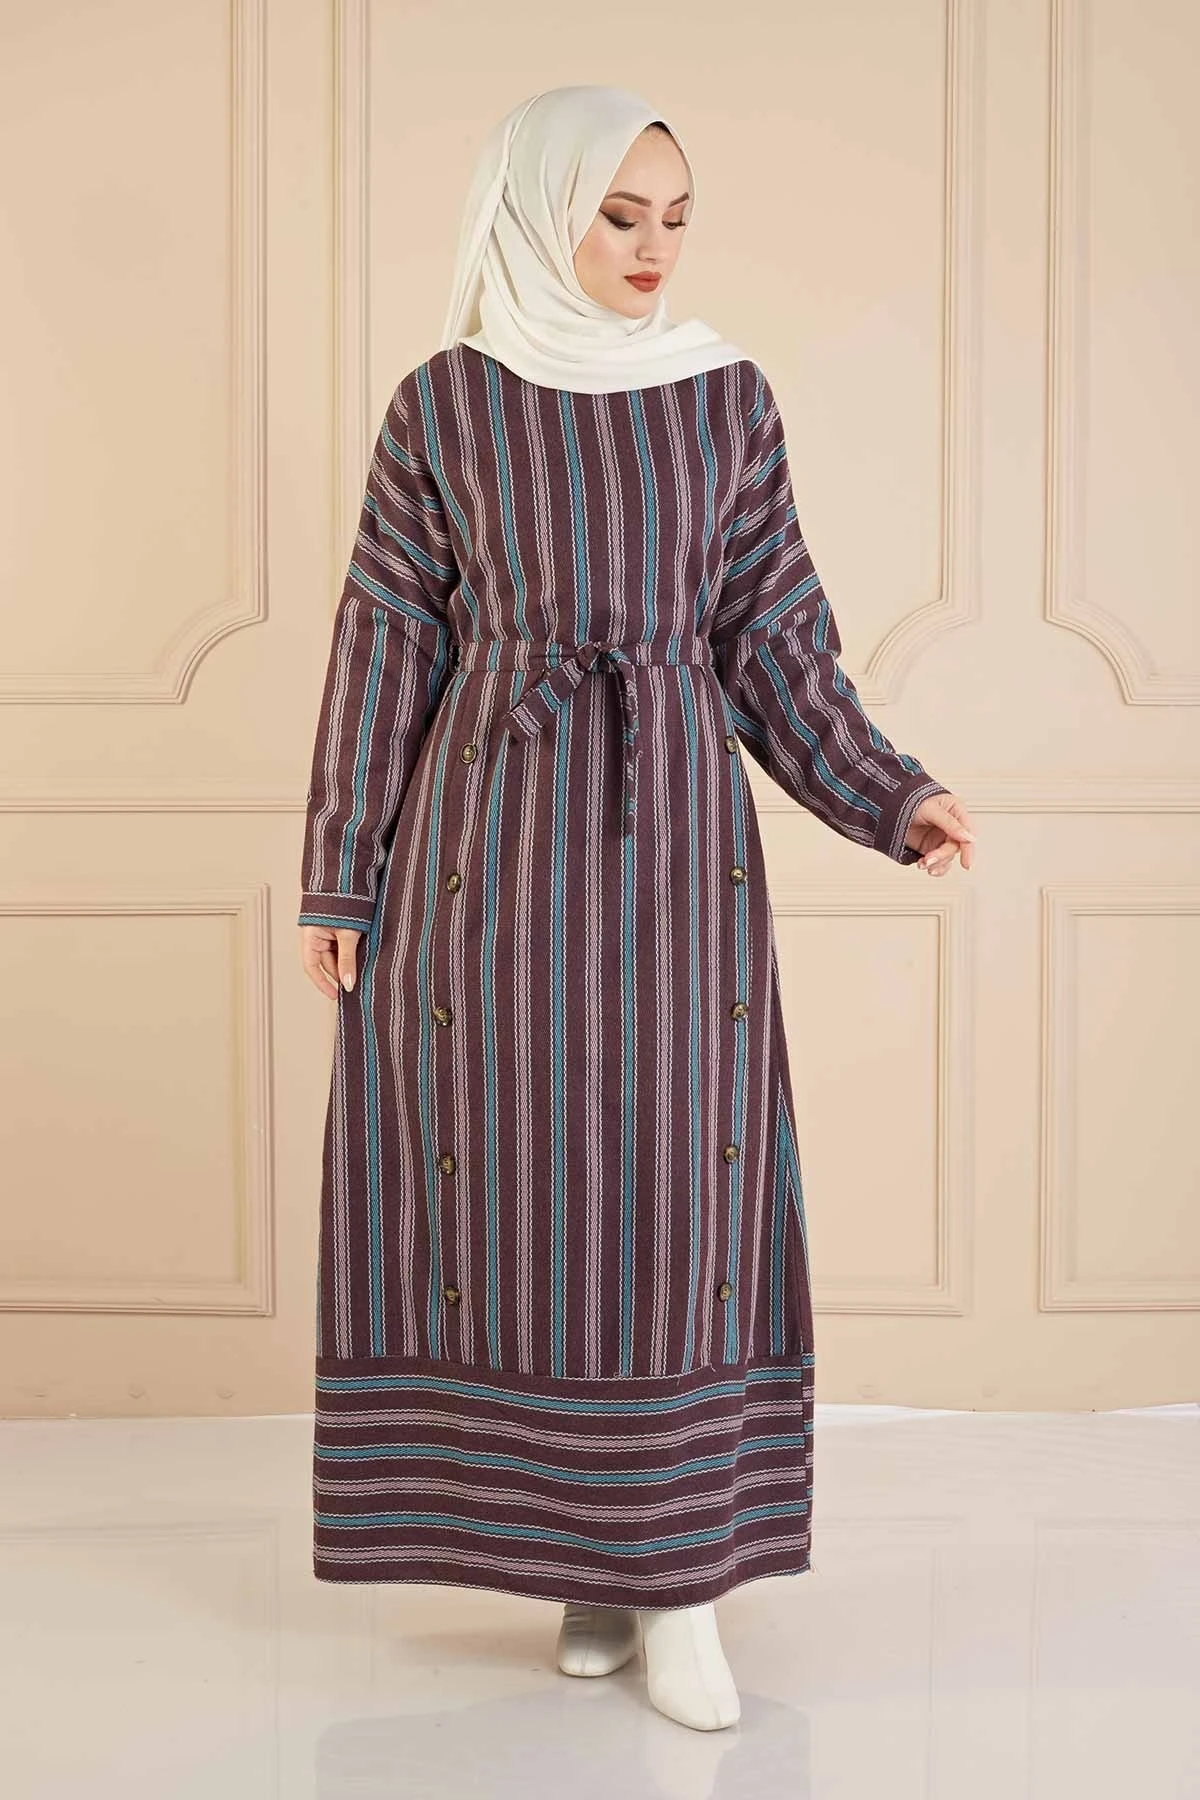 Платье в полоску, цвет Бургунди, зимний, осенний, модель 2021, головной платок, Исламская Турция